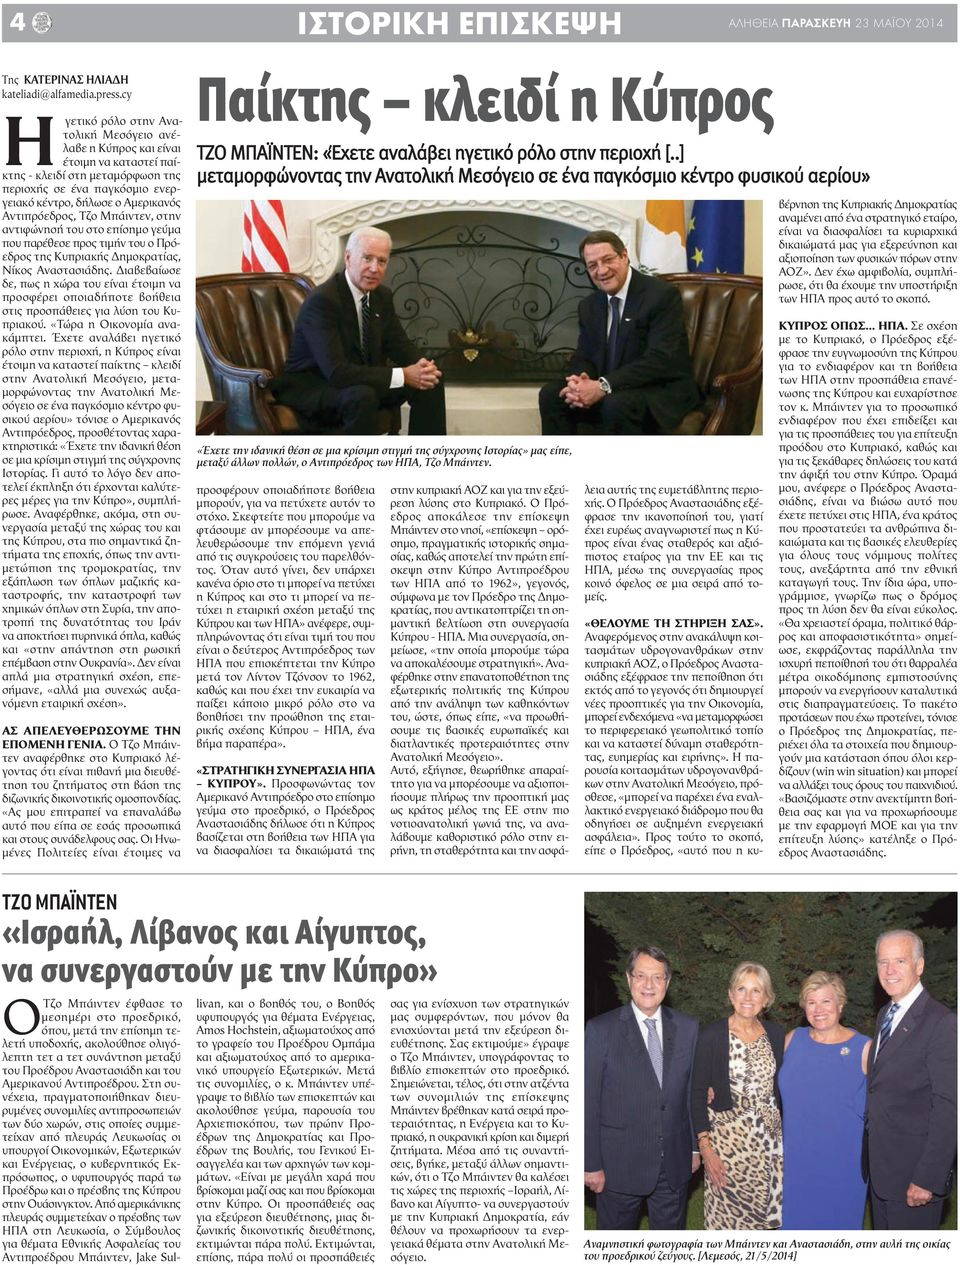 Αντιπρόεδρος, Τζο Μπάιντεν, στην αντιφώνησή του στο επίσημο γεύμα που παρέθεσε προς τιμήν του ο Πρόεδρος της Κυπριακής Δημοκρατίας, Νίκος Αναστασιάδης.